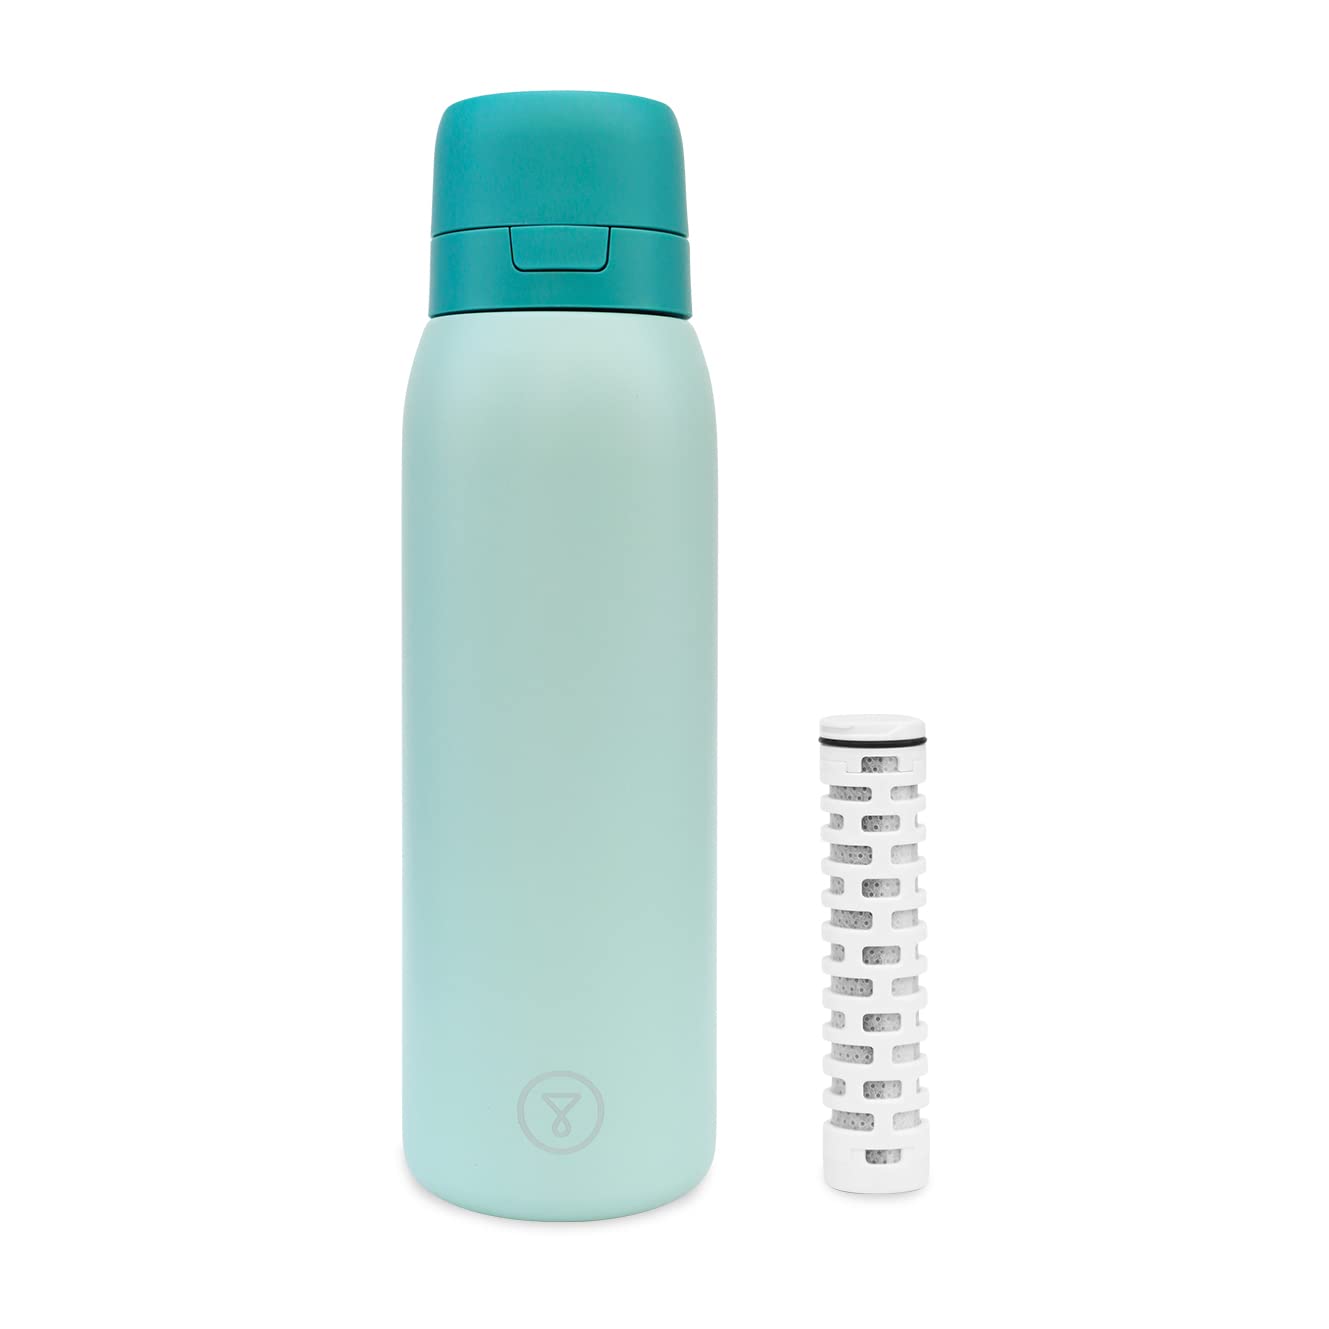 Tappwater BottlePro - Wiederverwendbare Wasserfilterflasche Filtert +80 Schadstoffe, BPA frei. Nachhaltige Kartuschen und luftdichter Verschluss. 750 ml (Grün)